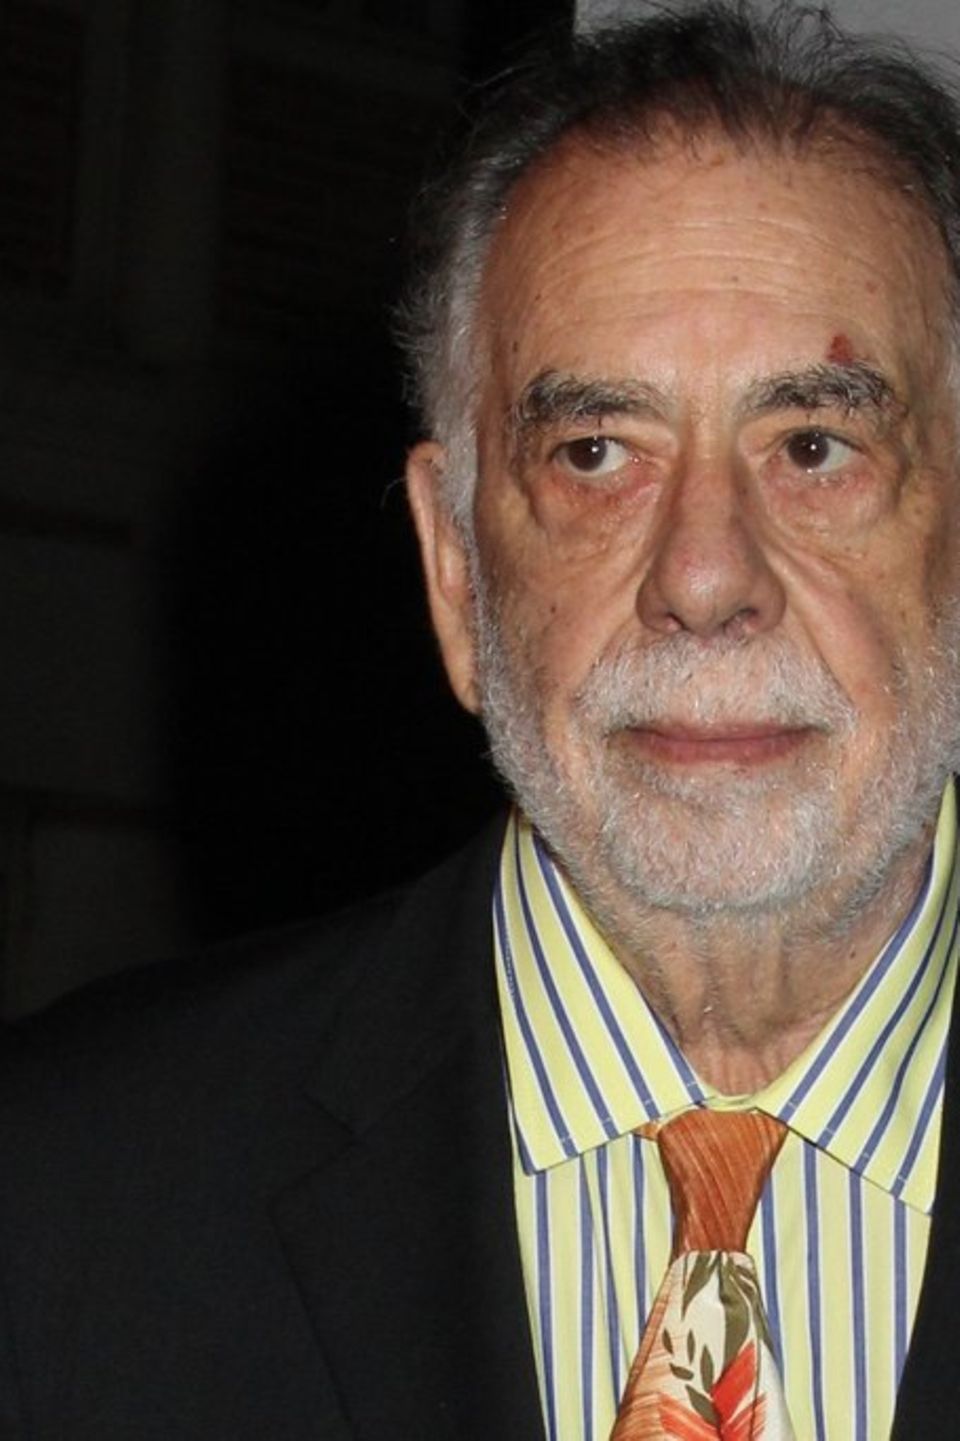 Francis Ford Coppolas "Megalopolis" soll 2024 starten. Heute wird der Filmemacher 85 Jahre alt.